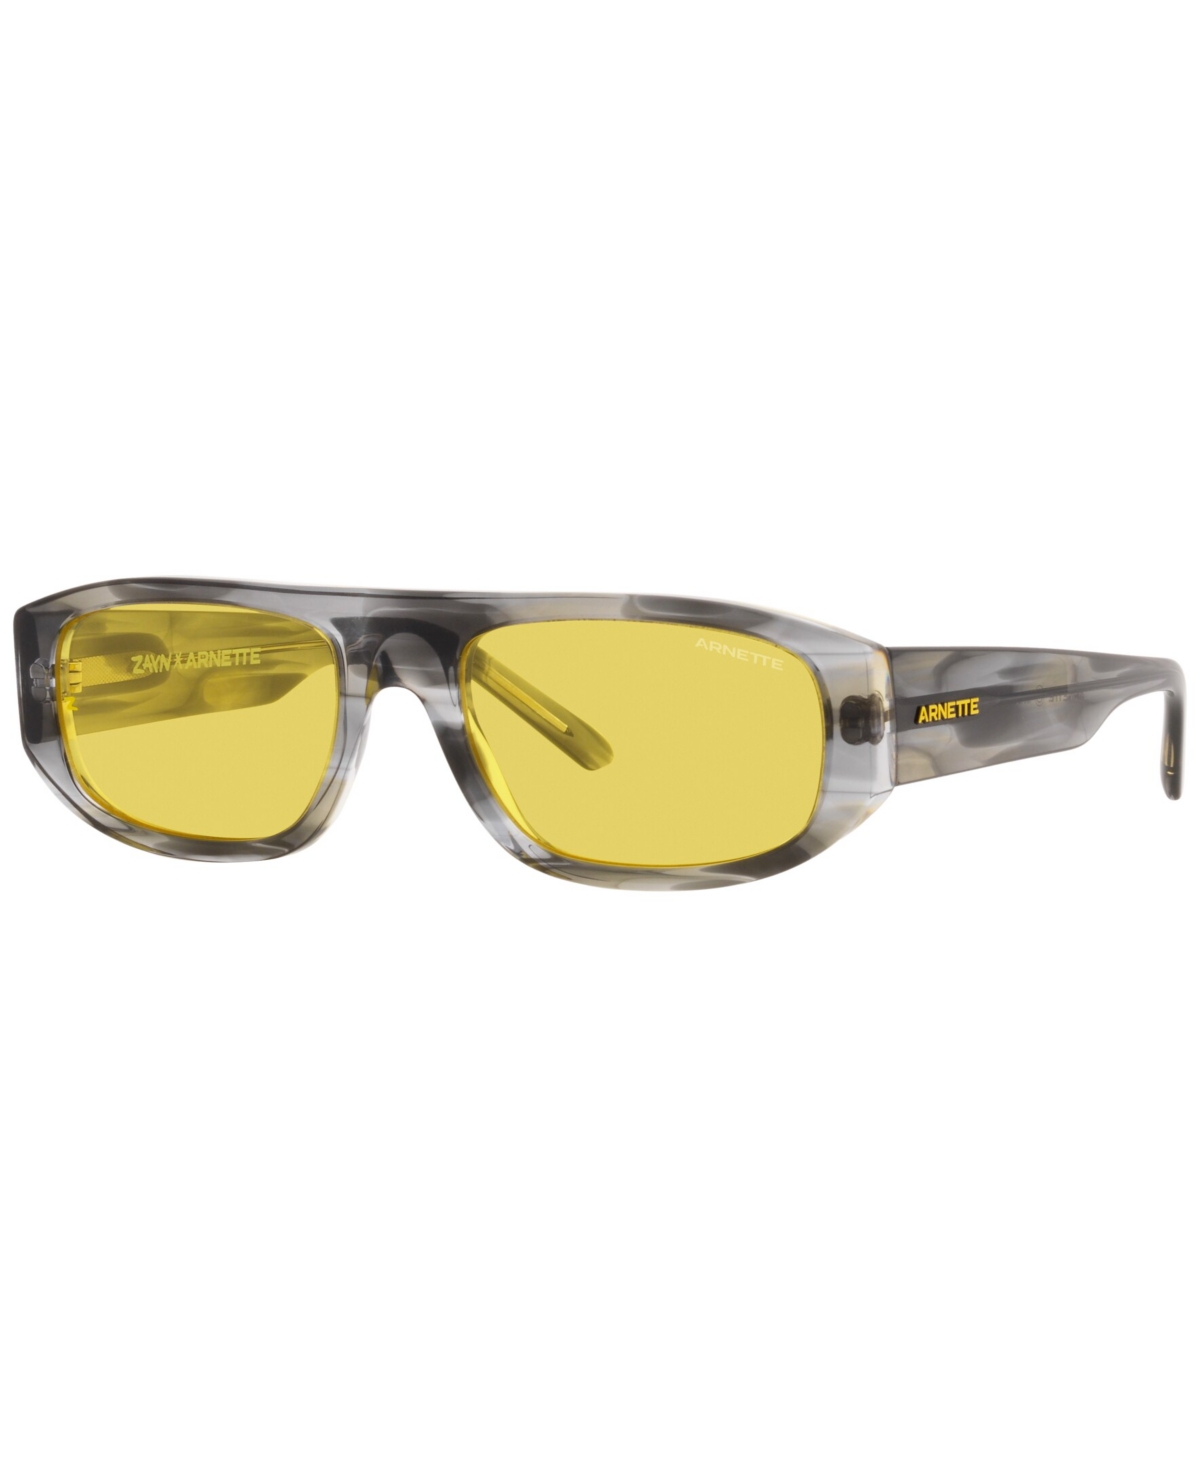 Arnette Unisex Sunglasses, AN4292 Gullwing 55